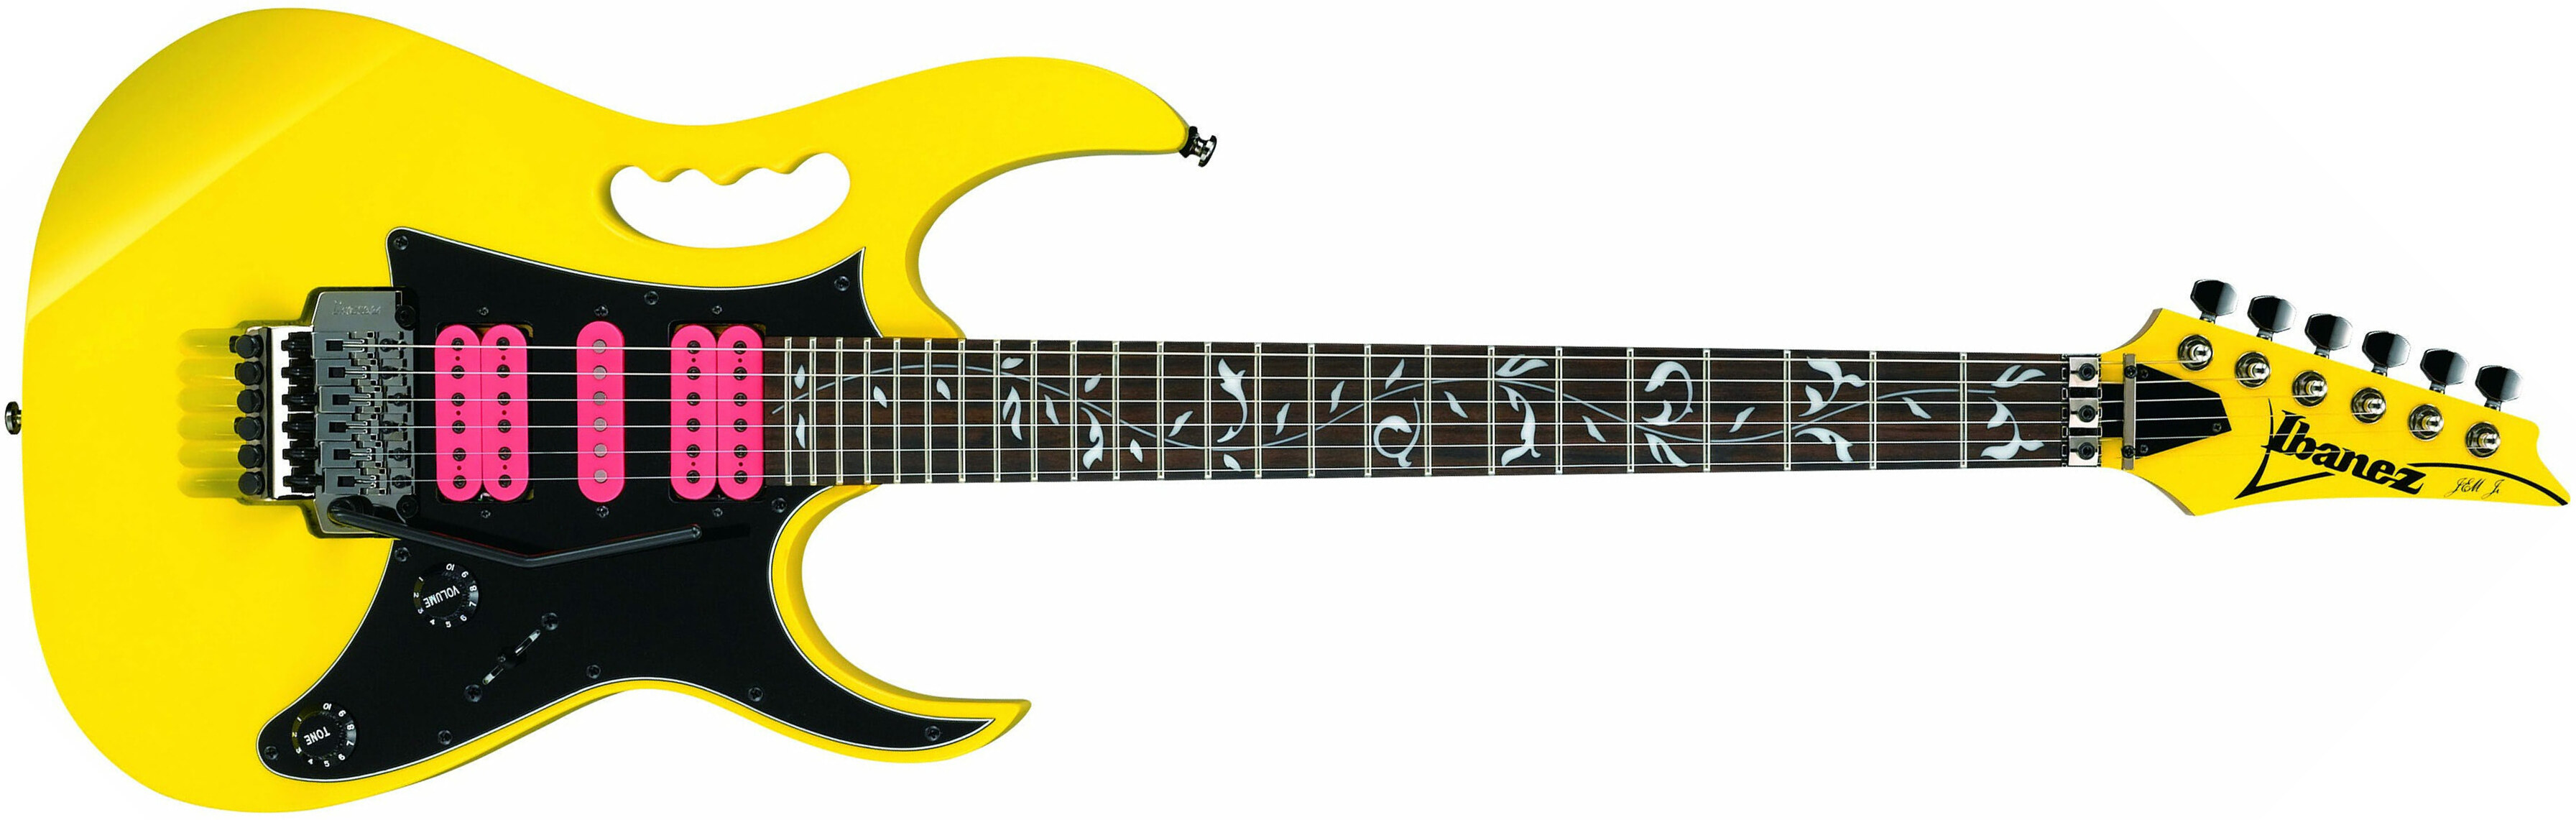 Ibanez Steve Vai Jemjr Ye Signature Hsh Fr Rw - Yellow - Guitarra eléctrica con forma de str. - Main picture